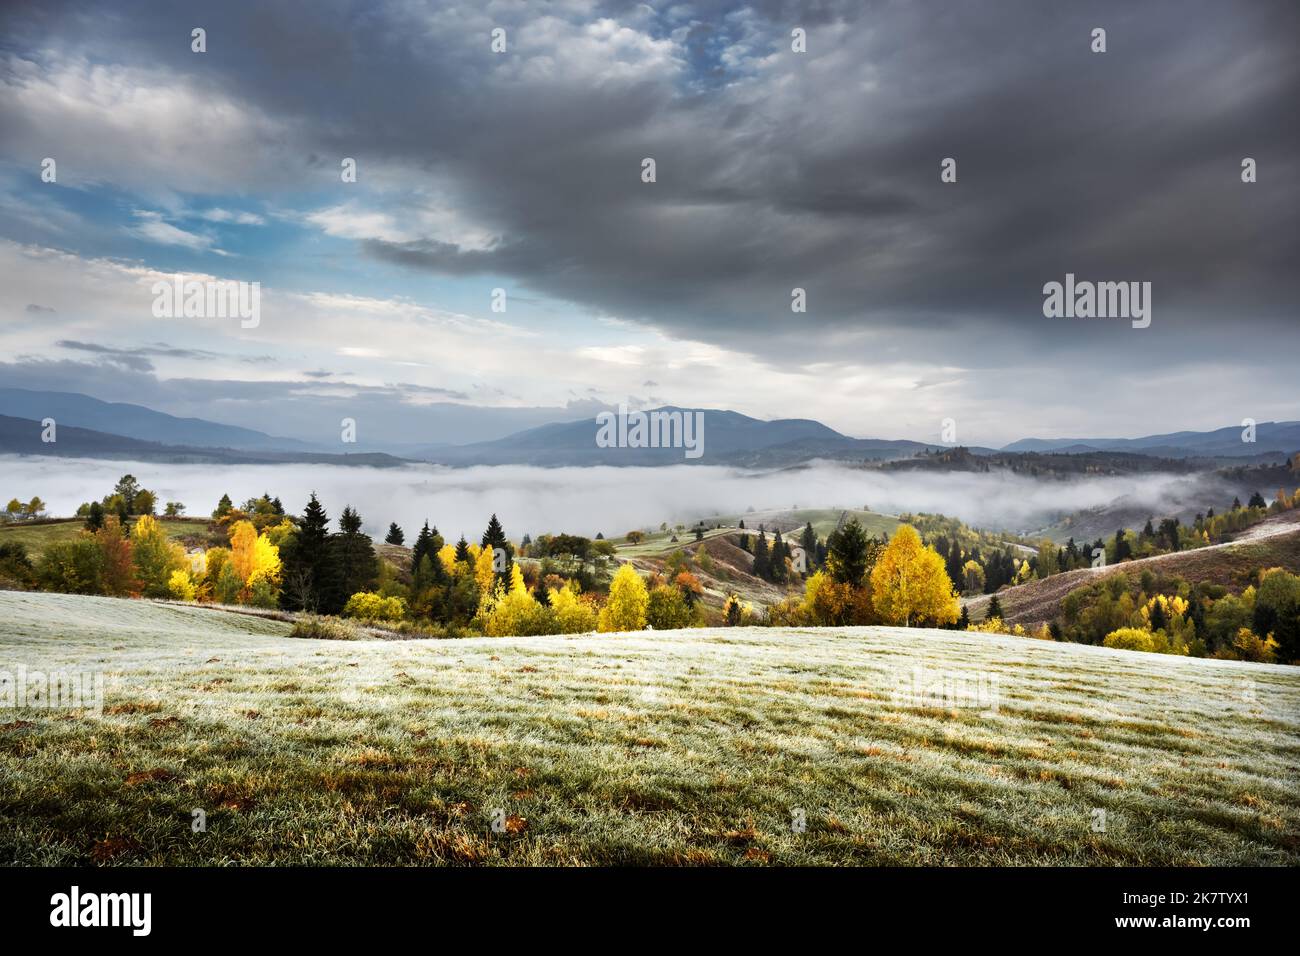 Erstaunliche Szene auf Herbstbergen. Gelbe und orangefarbene Bäume im fantastischen Morgennebel. Karpaten, Europa. Landschaftsfotografie Stockfoto